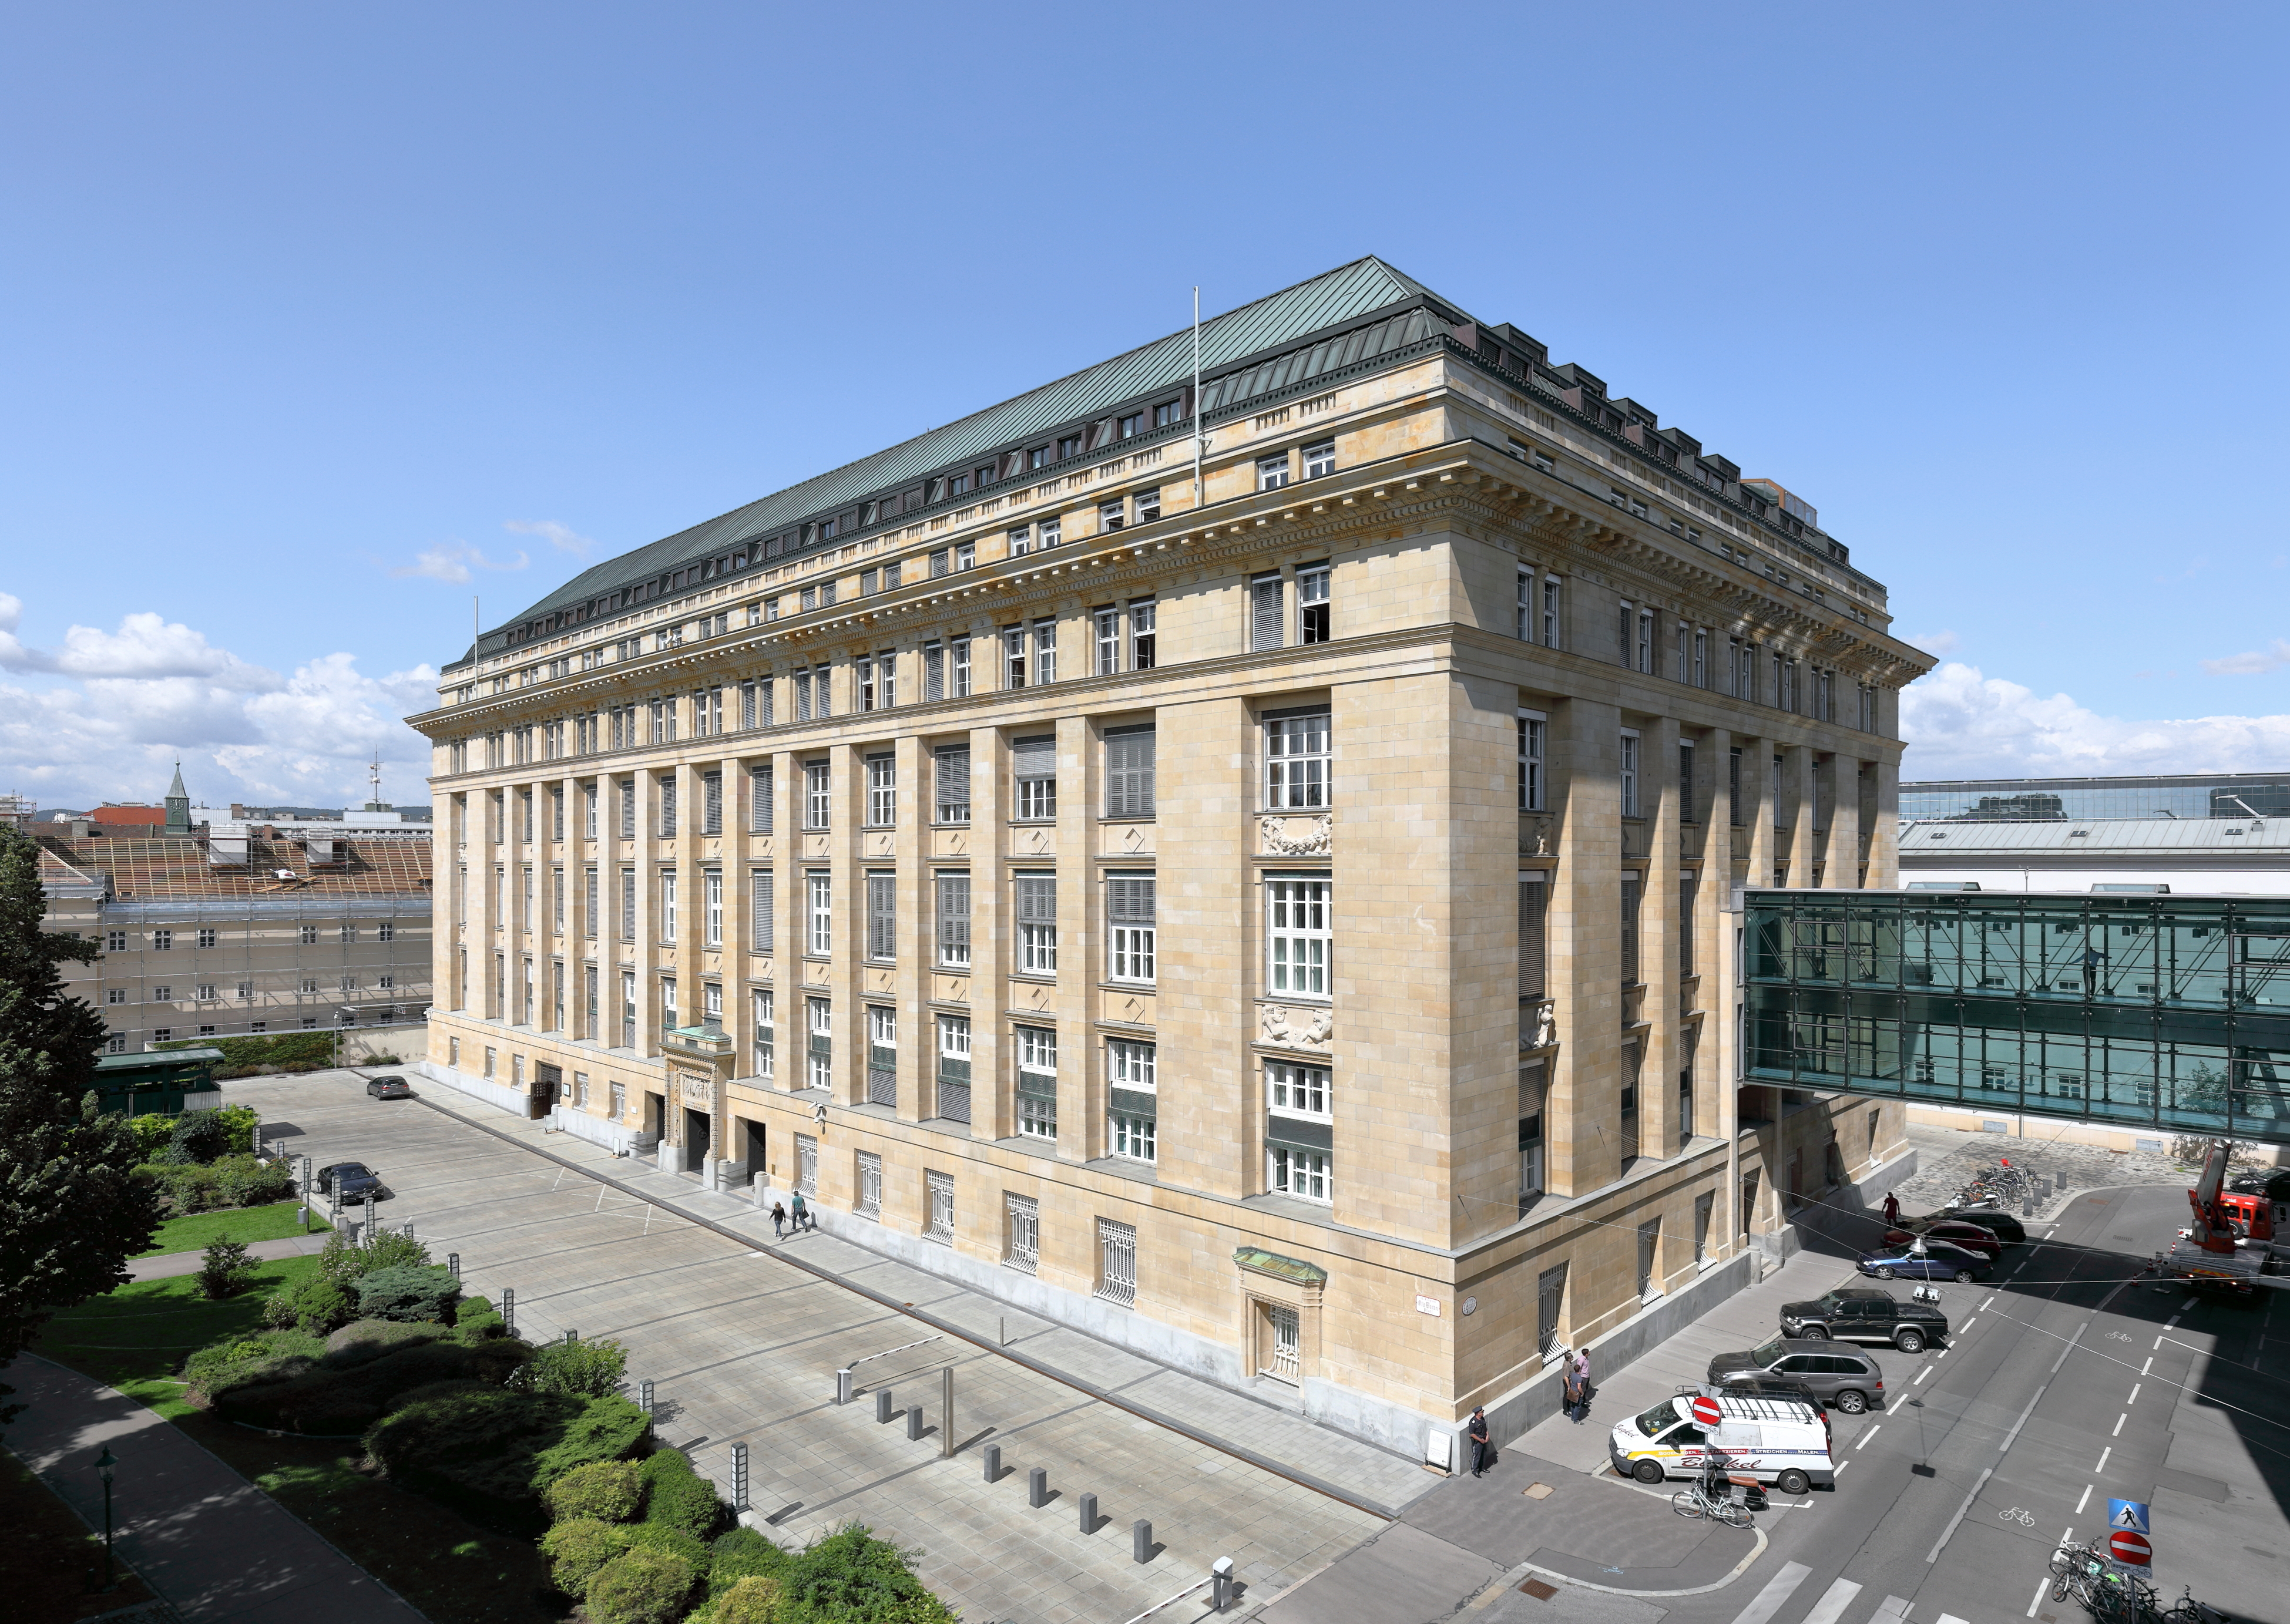 Alsergrund_(Wien)_-_Hauptgebäude_der_Österreichischen_Nationalbank